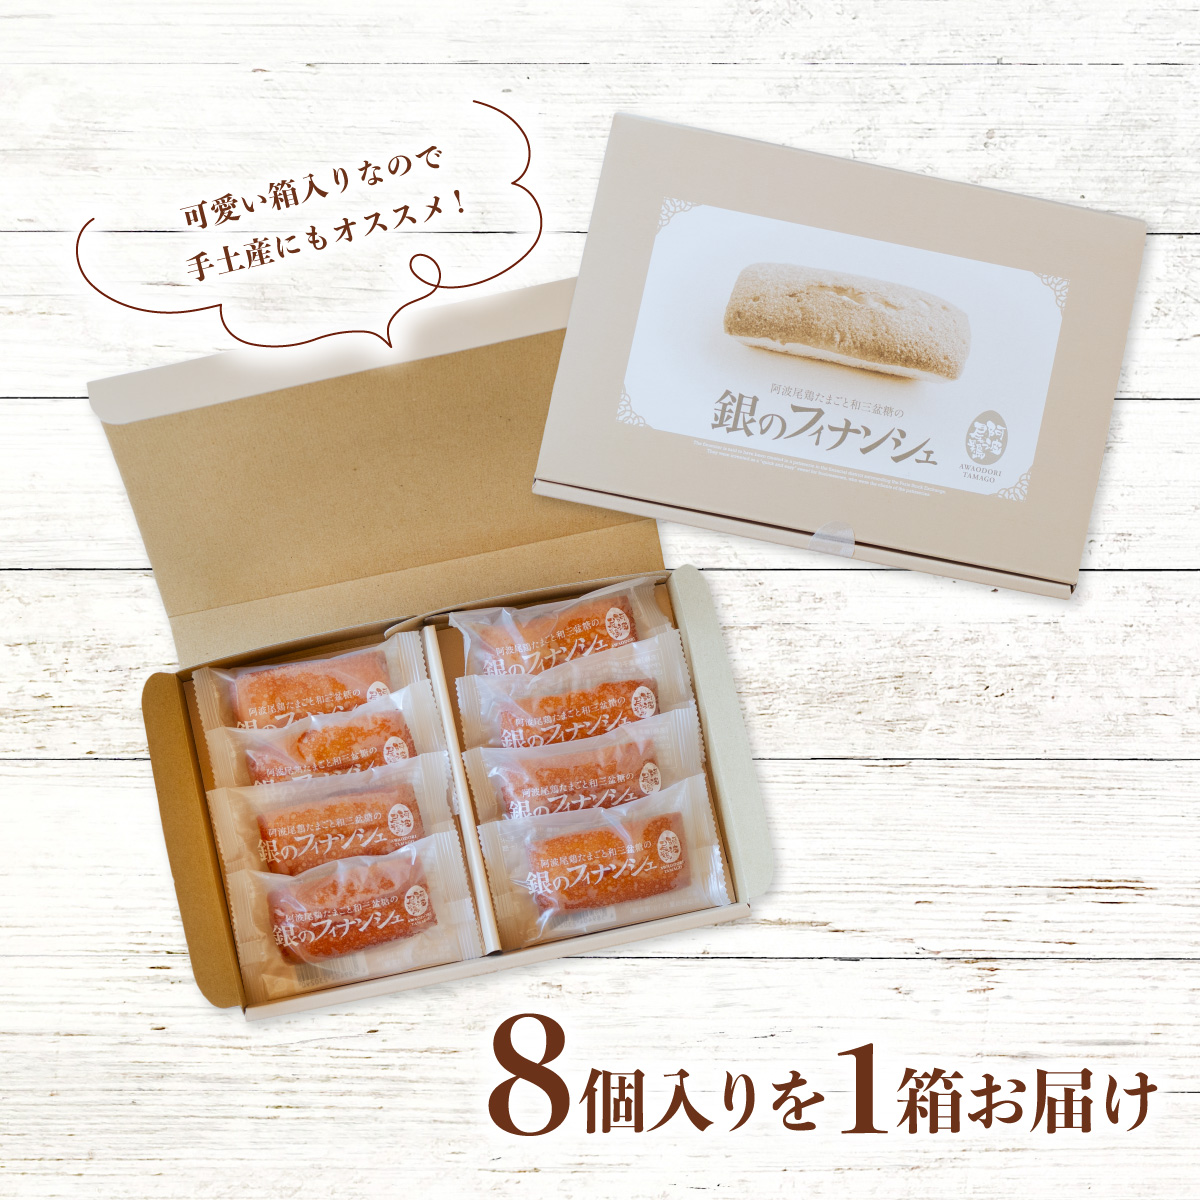 阿波尾鶏たまごと和三盆糖の「銀のフィナンシェ」 8個入り×1箱